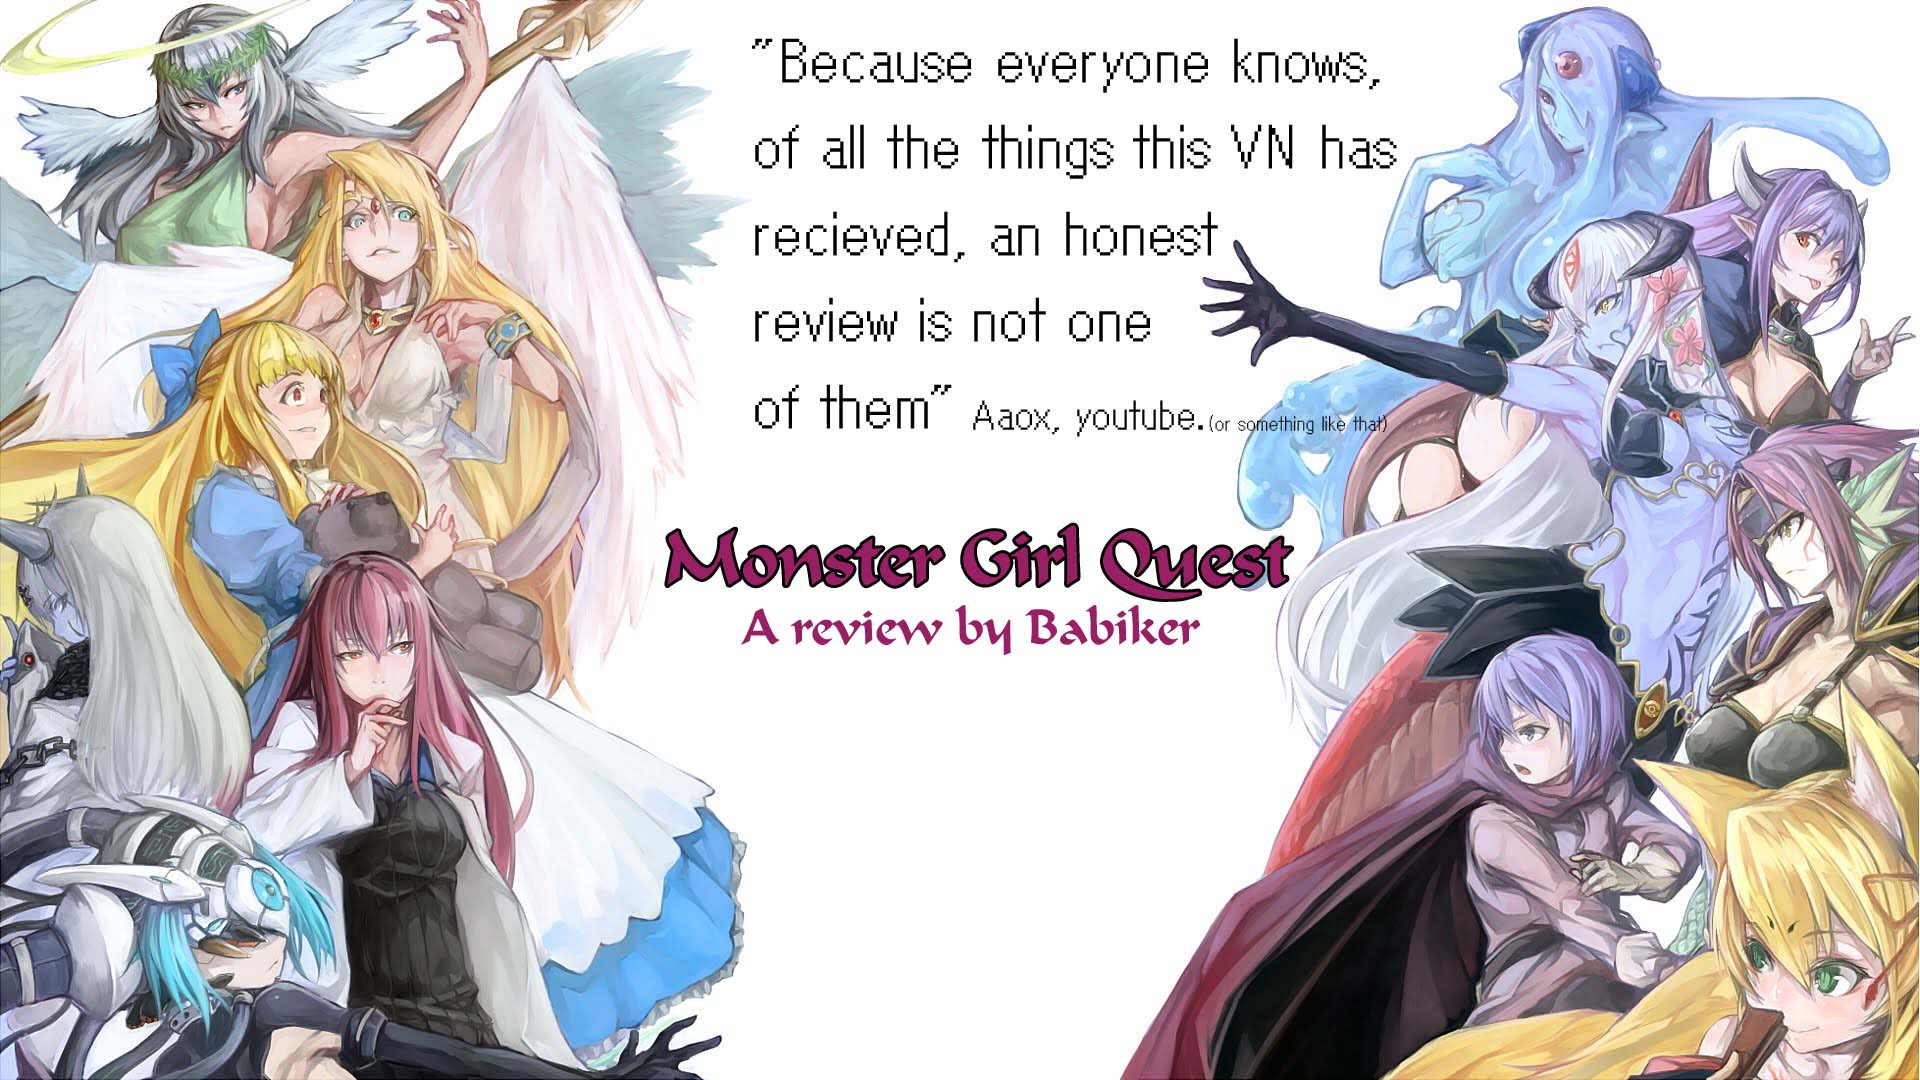 azuan shah recommends Monster Girl Quest Ova